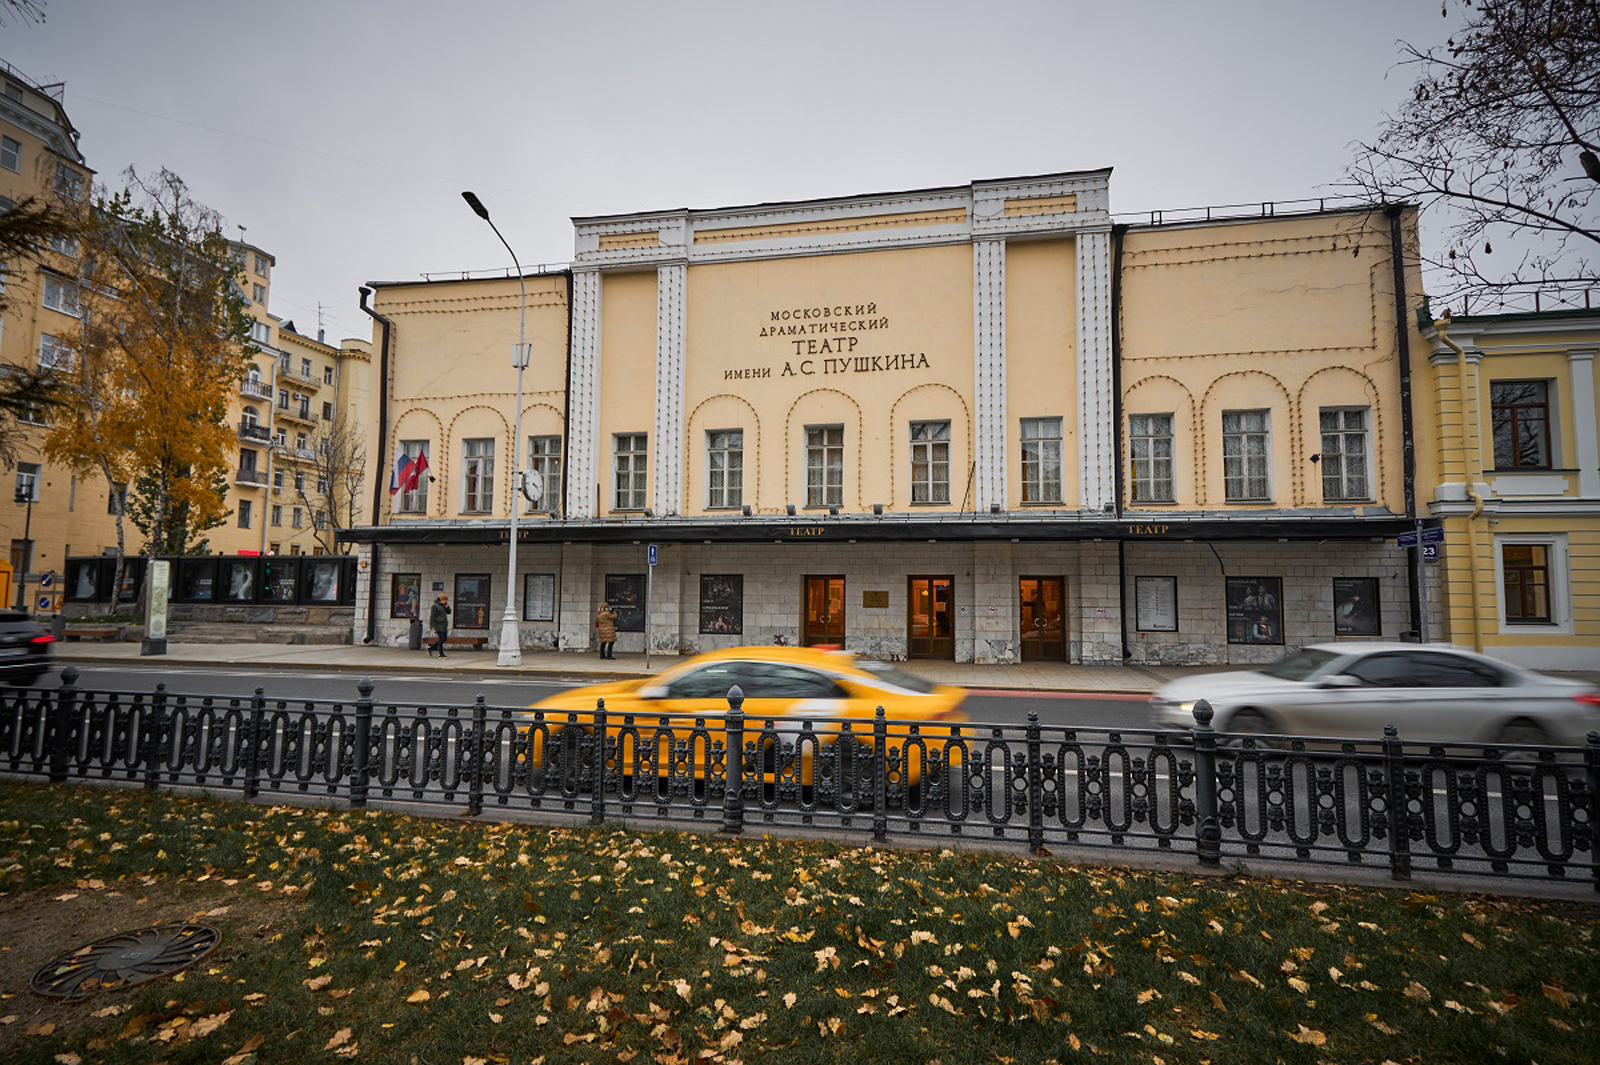 Рассказ служащих о том, как создаются любимые спектакли жителей столицы сопровождается виртуальной экскурсией. Фото: сайт мэра Москвы